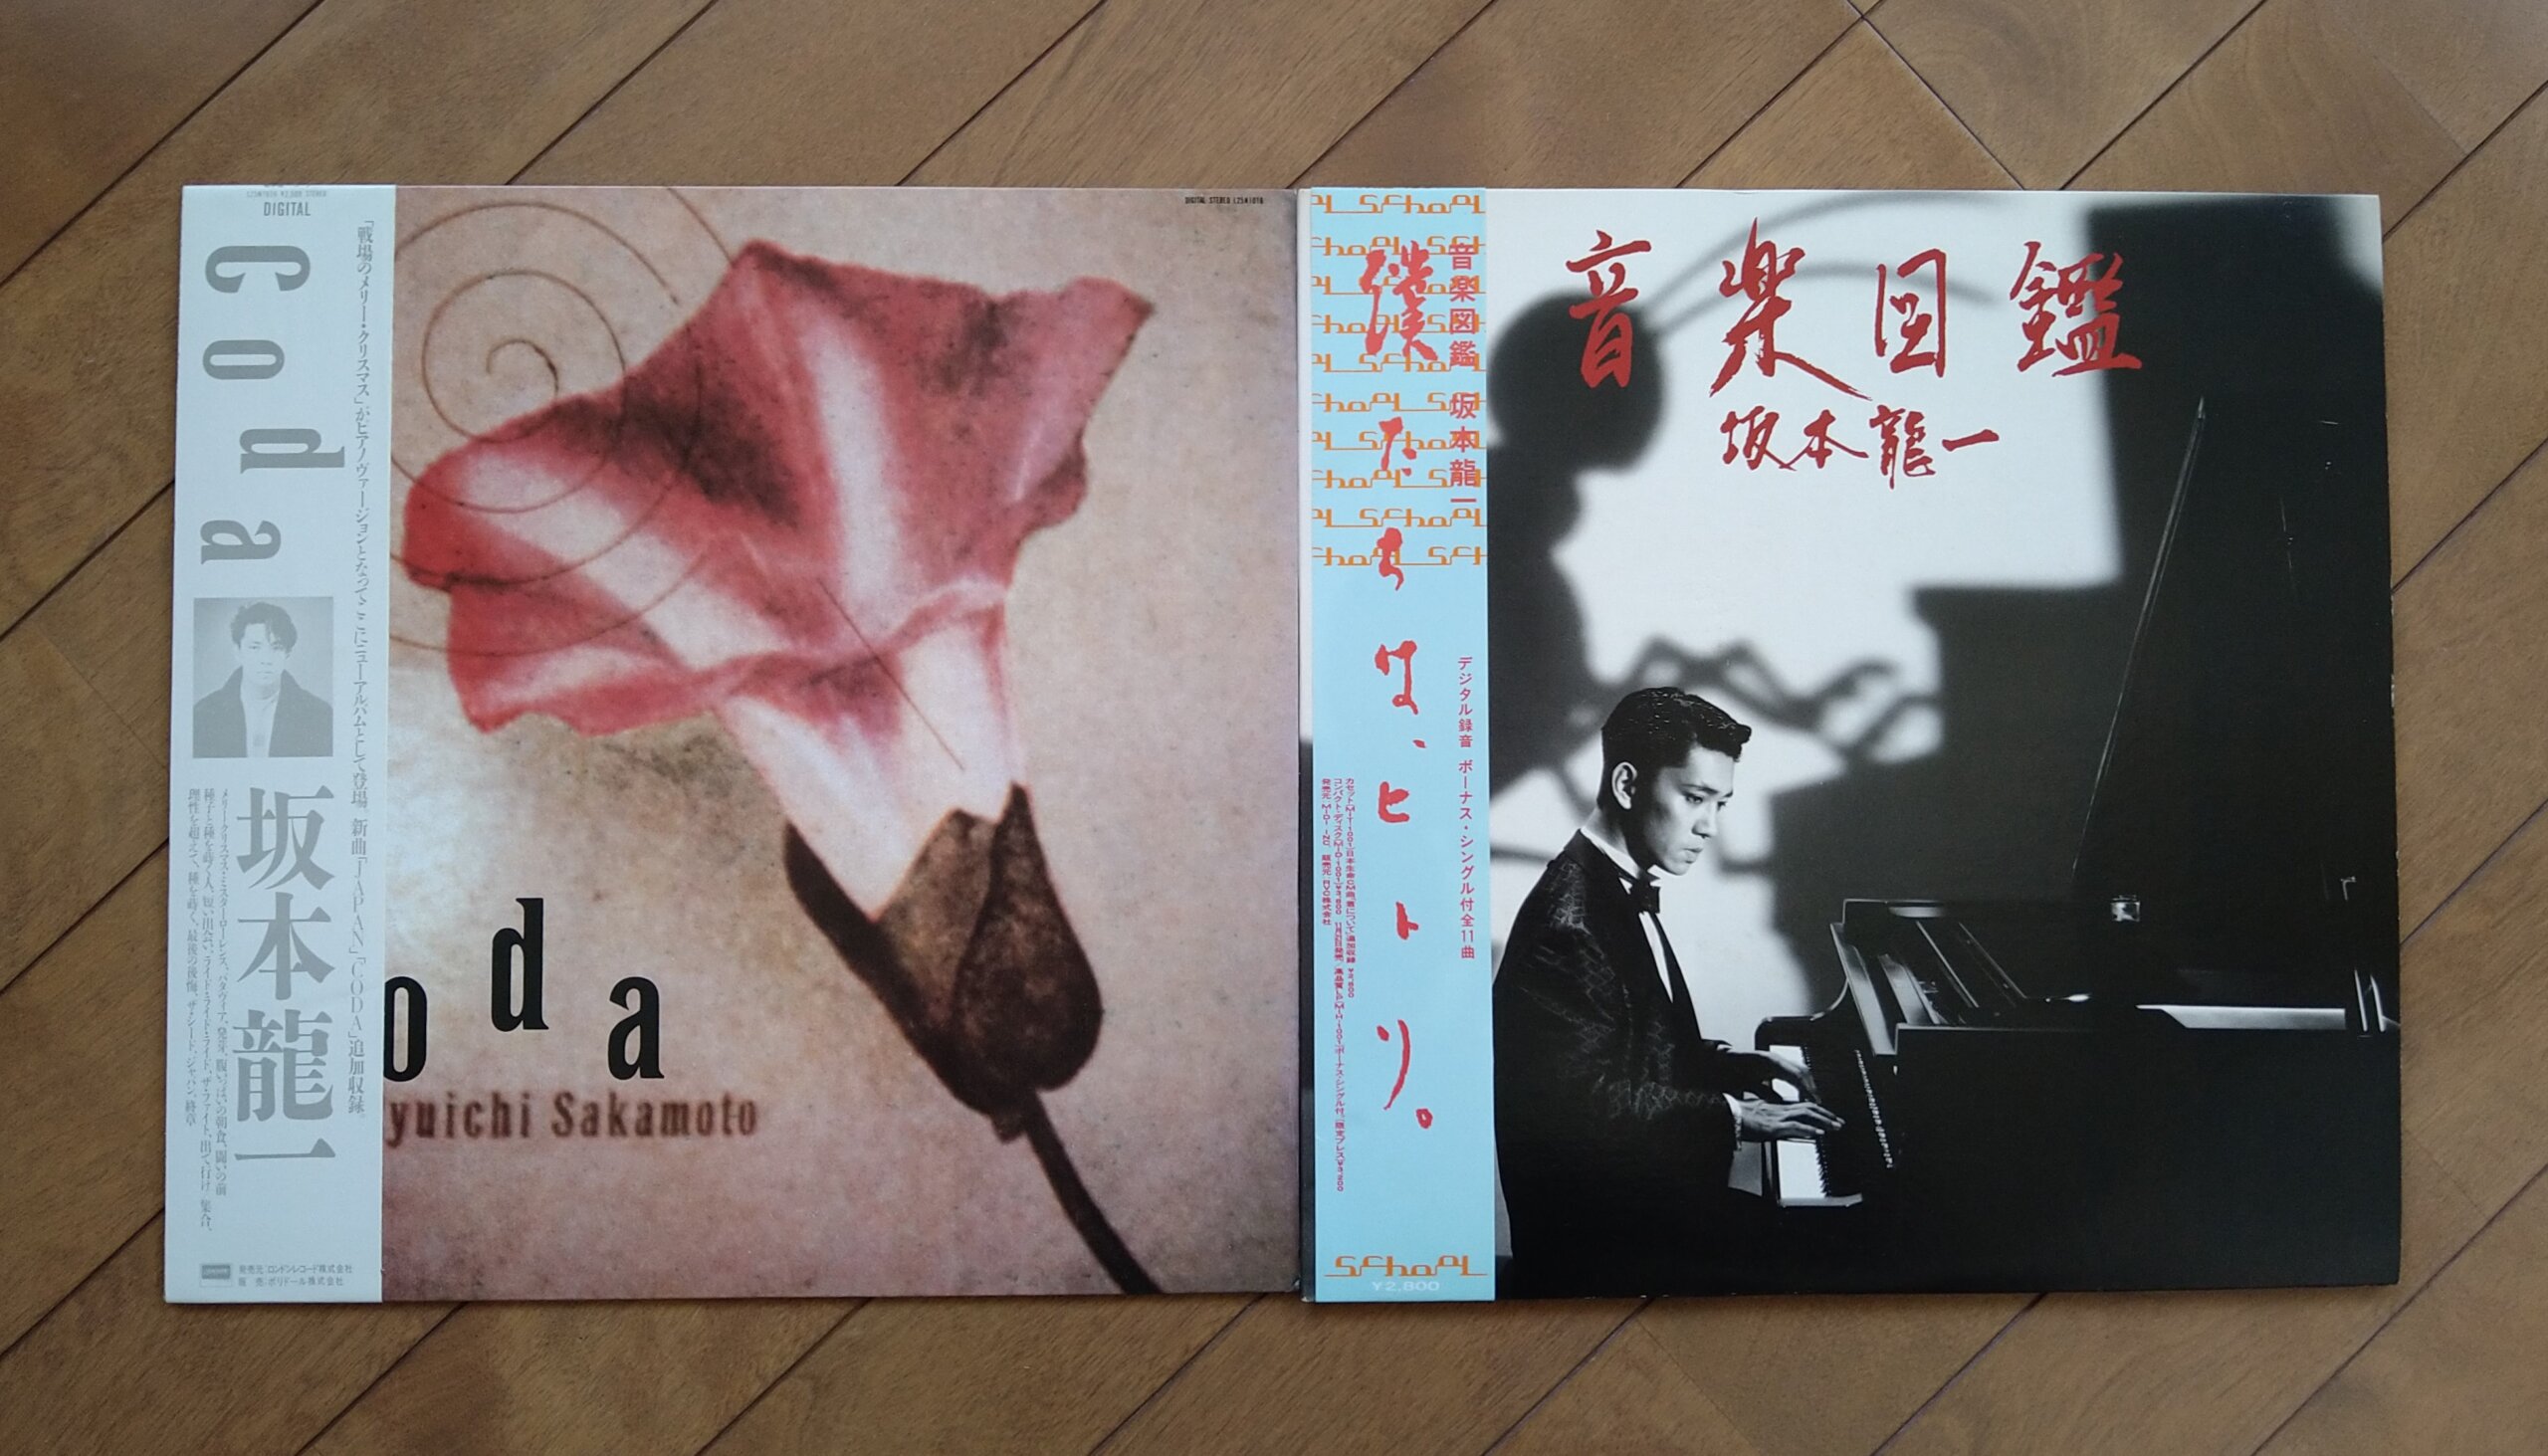 坂本龍一のアルバム『Coda』（1983年）と『音楽図鑑』（1984年）のレコード